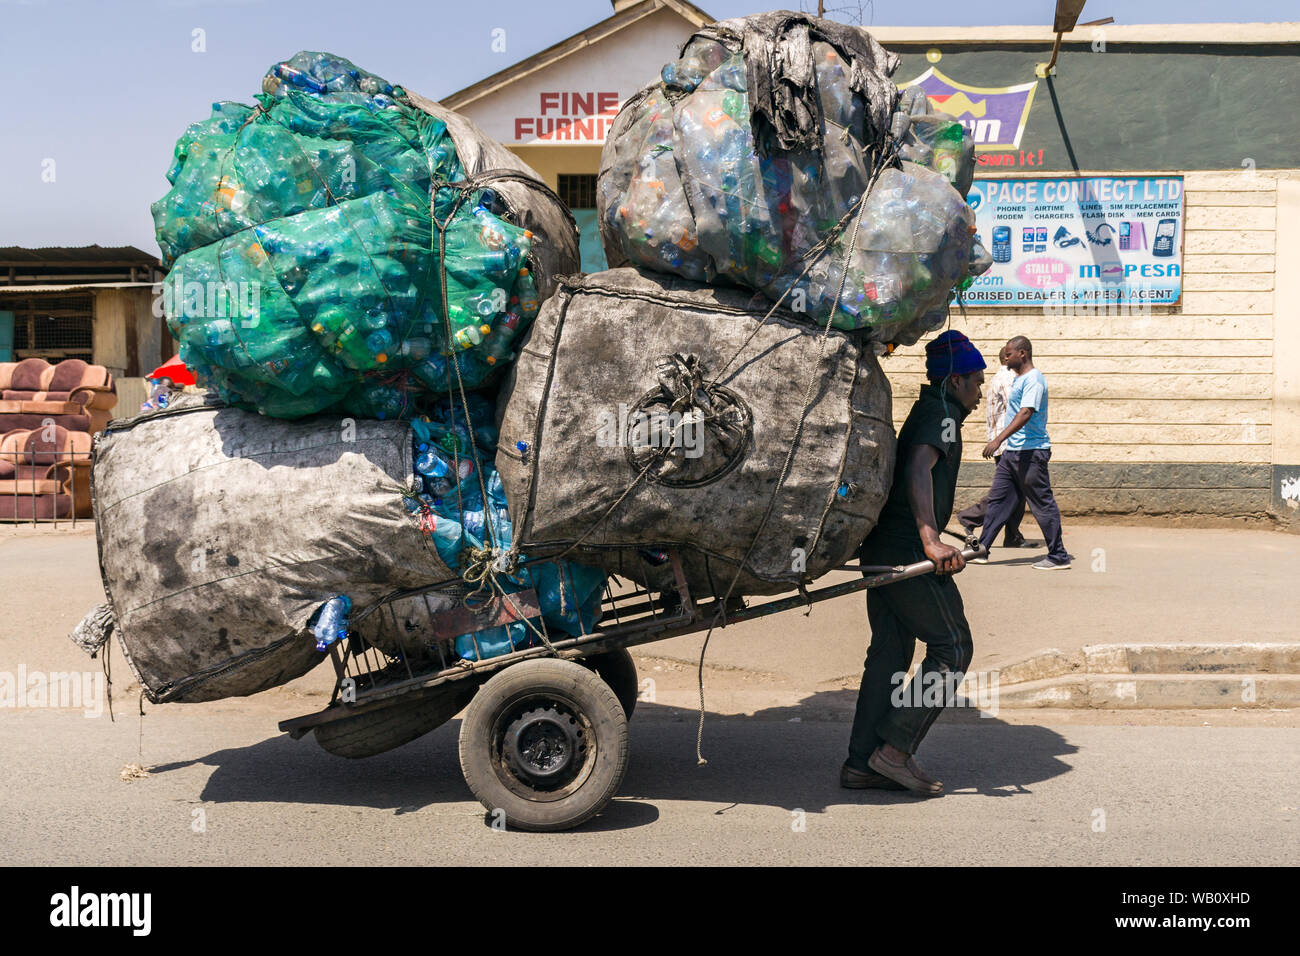 Extracteur de chariot à main transport de grands sacs rempli de plastique à recycler, Nairobi, Kenya Banque D'Images